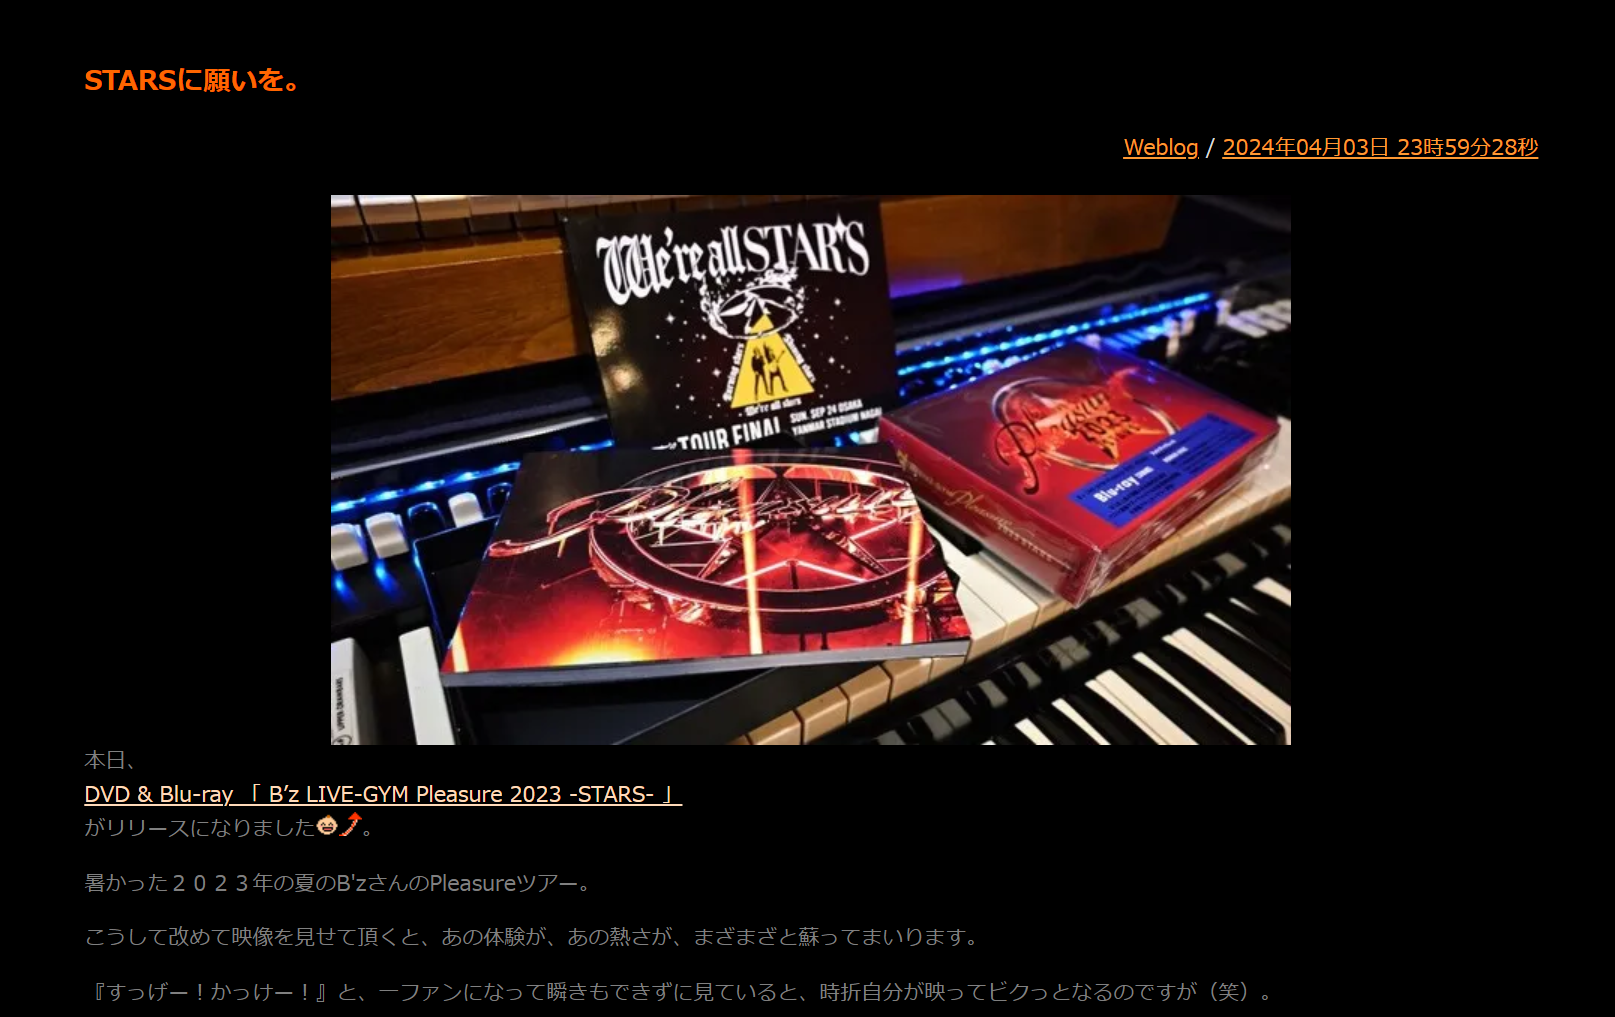 川村ケンが映像作品『B'z LIVE-GYM Pleasure 2023 -STARS-』リリースに寄せたブログのコメント